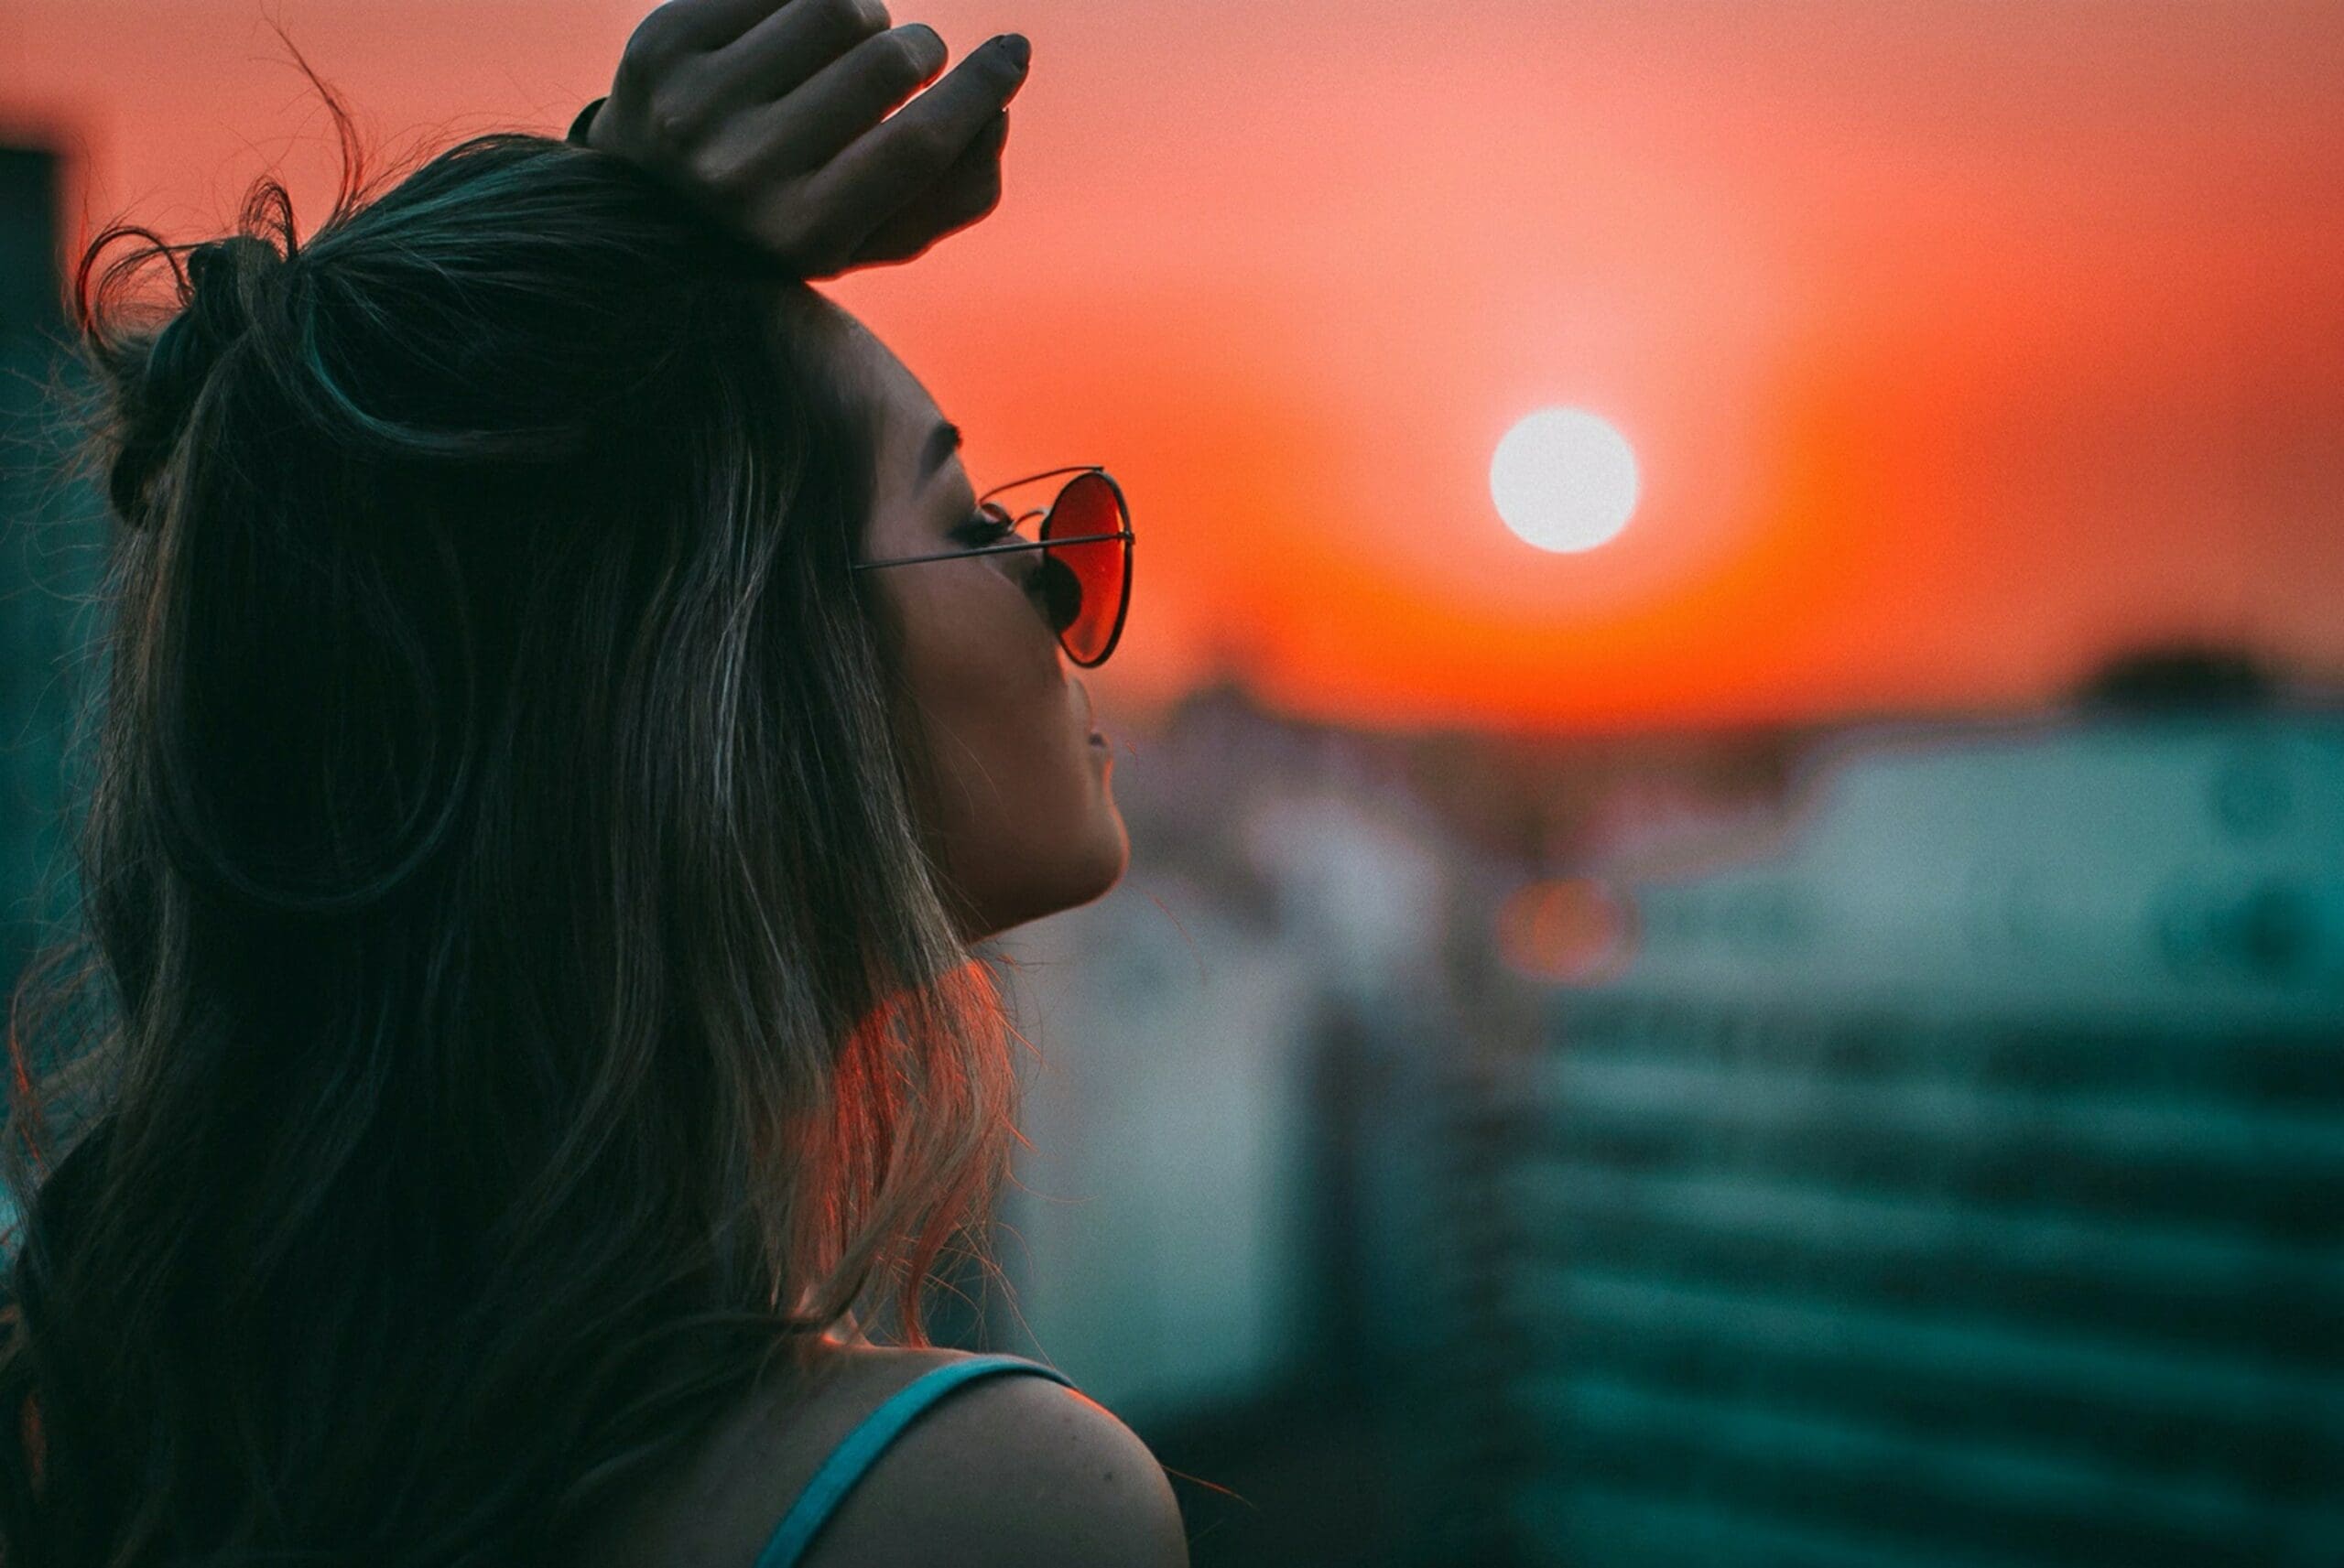 Girl looking into setting sun